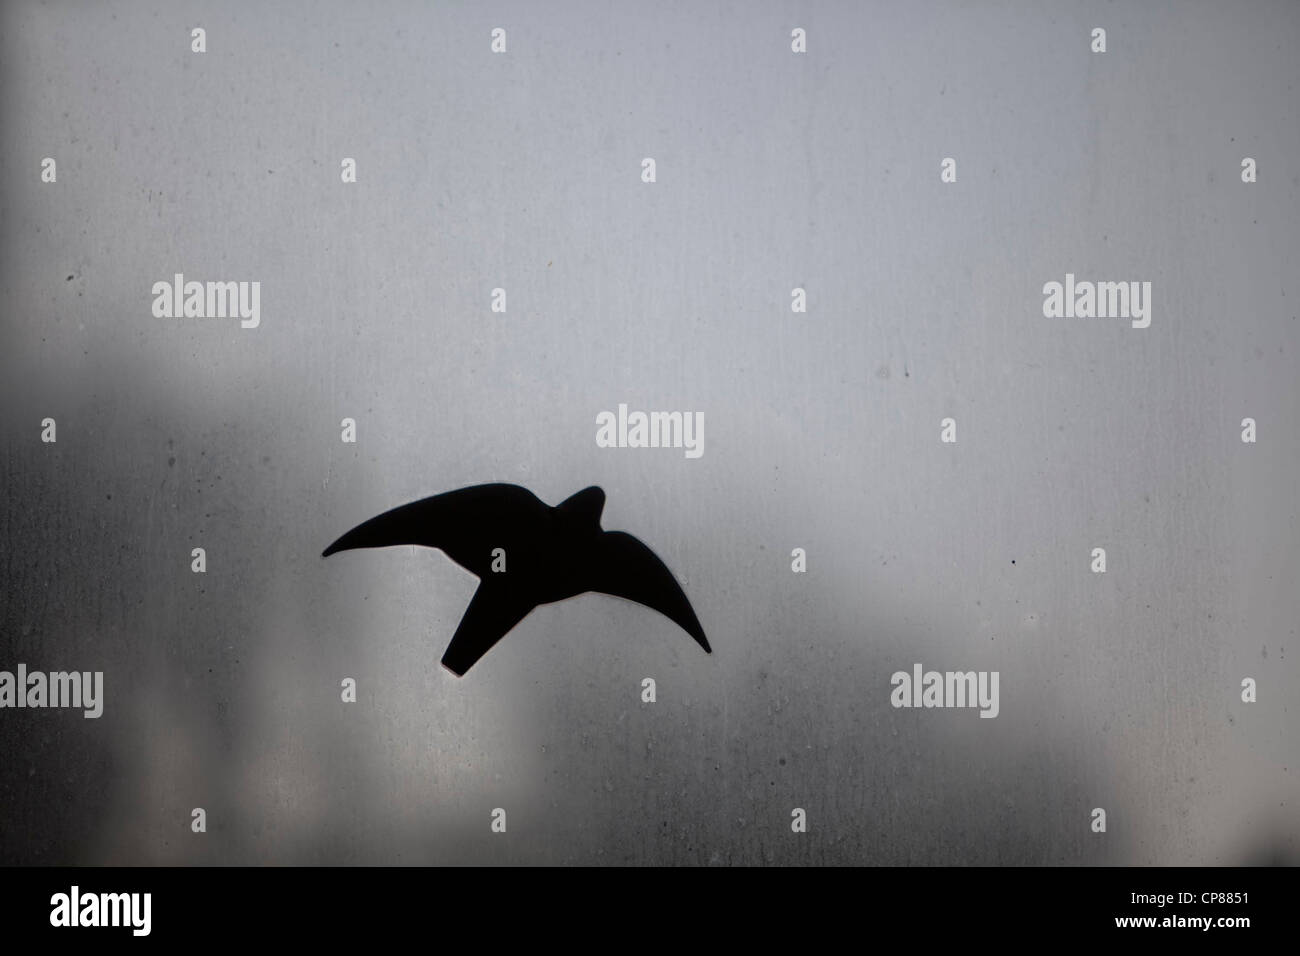 Ein Vogel aus schwarzer Folie klebt auf einer schmutzigen und beschlagenen Glasscheibe Stock Photo